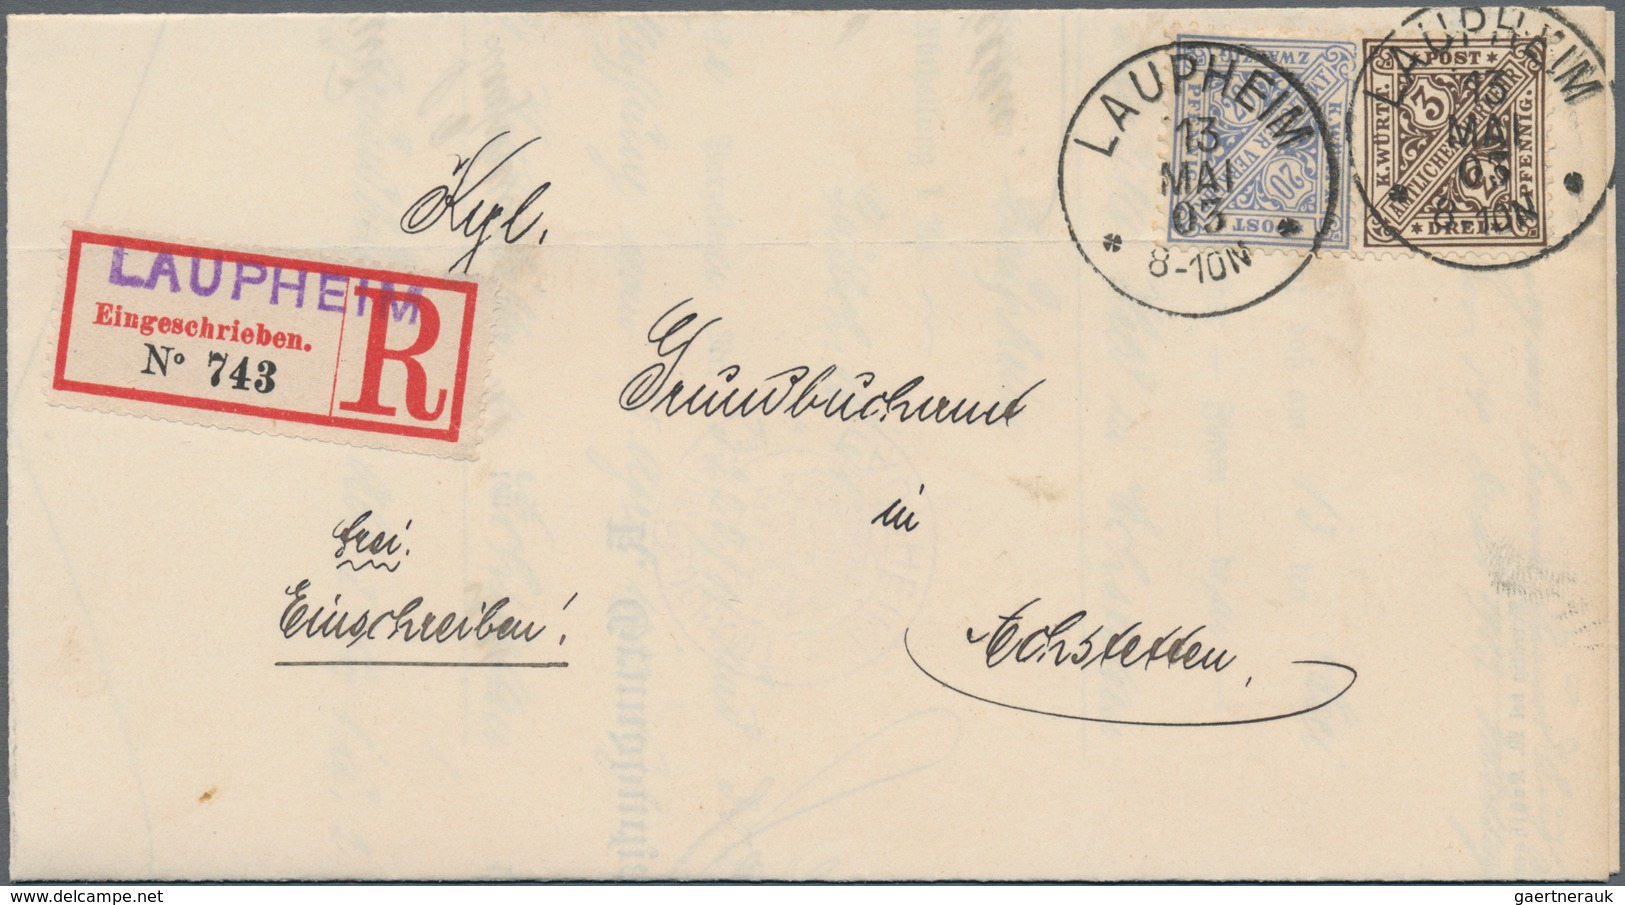 Württemberg - Marken und Briefe: 1851/1920, gehaltvoller Sammlungbestand mit ca.100 Briefen, Karten